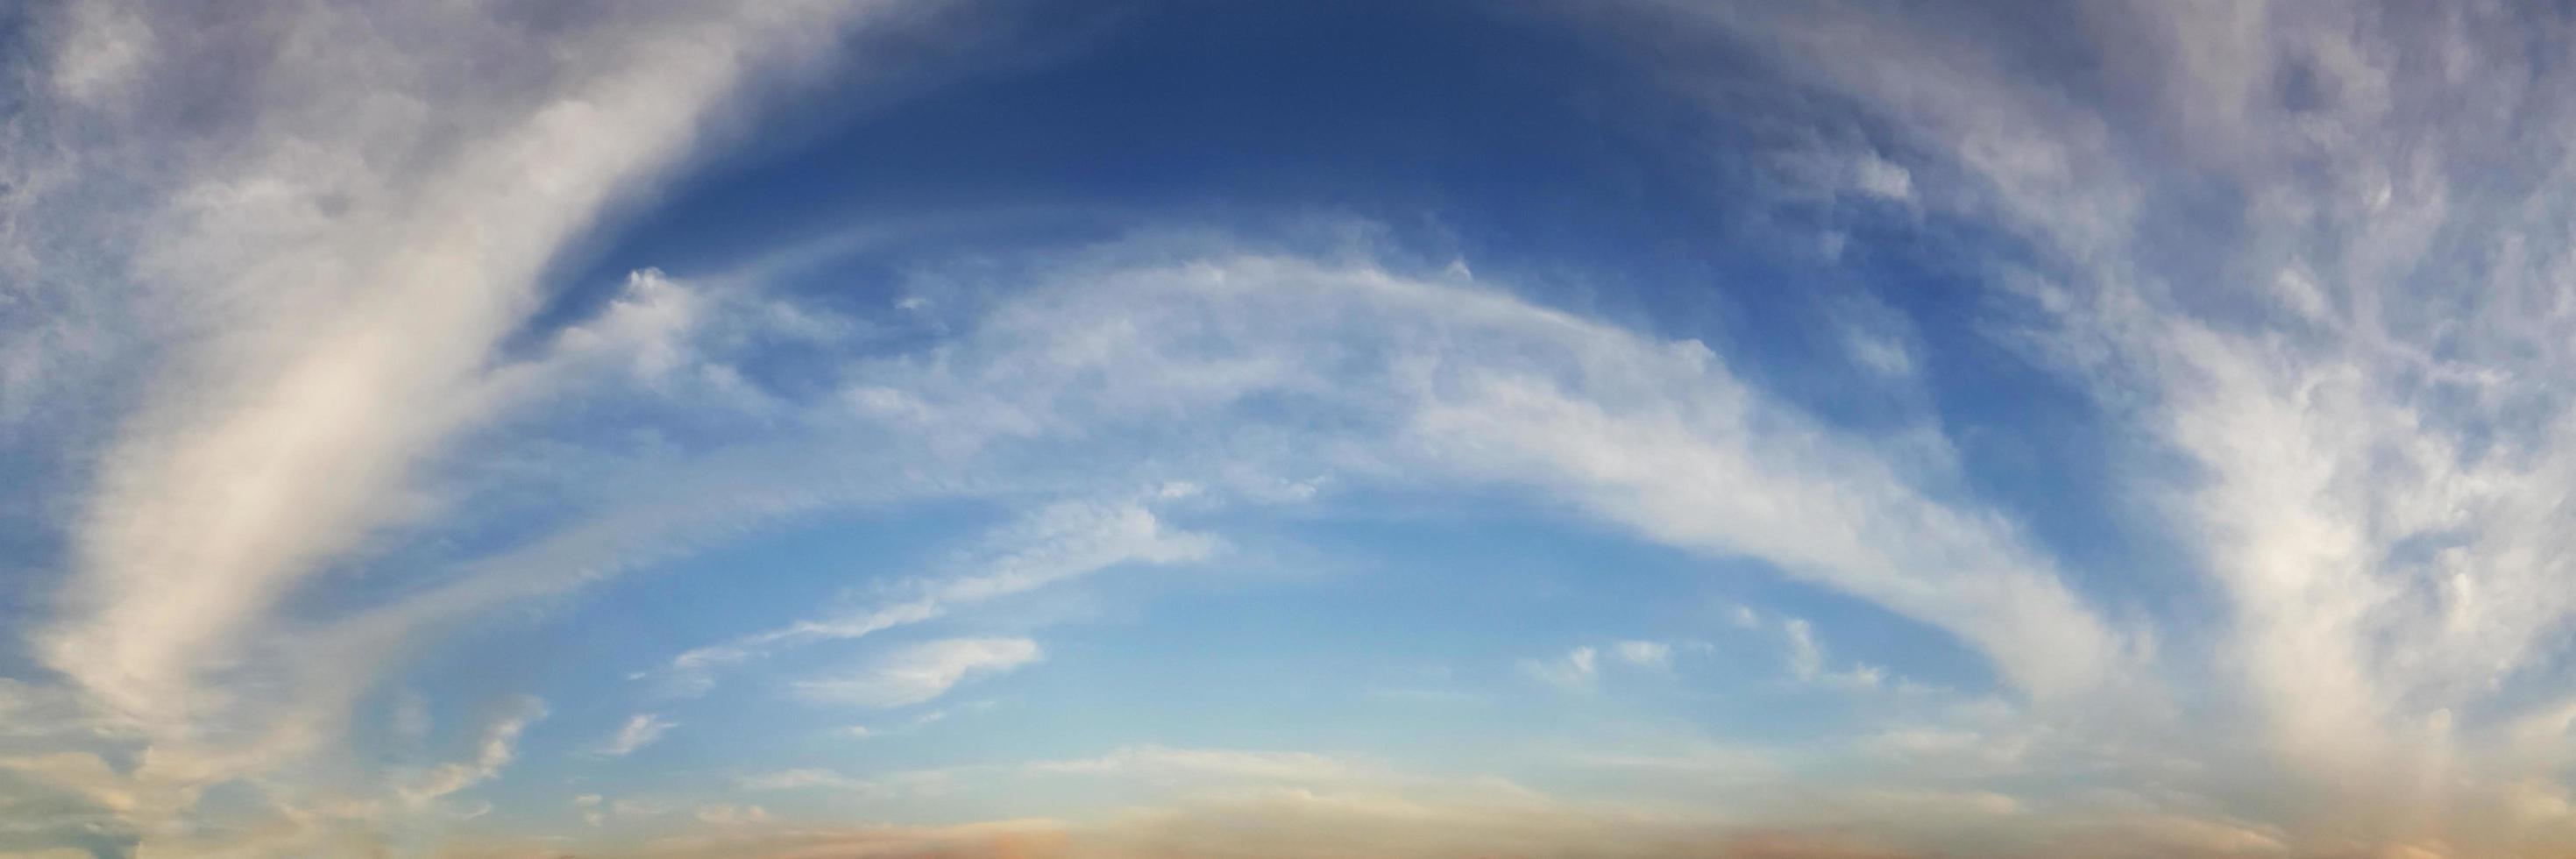 céu panorâmico com nuvem em um dia ensolarado. foto